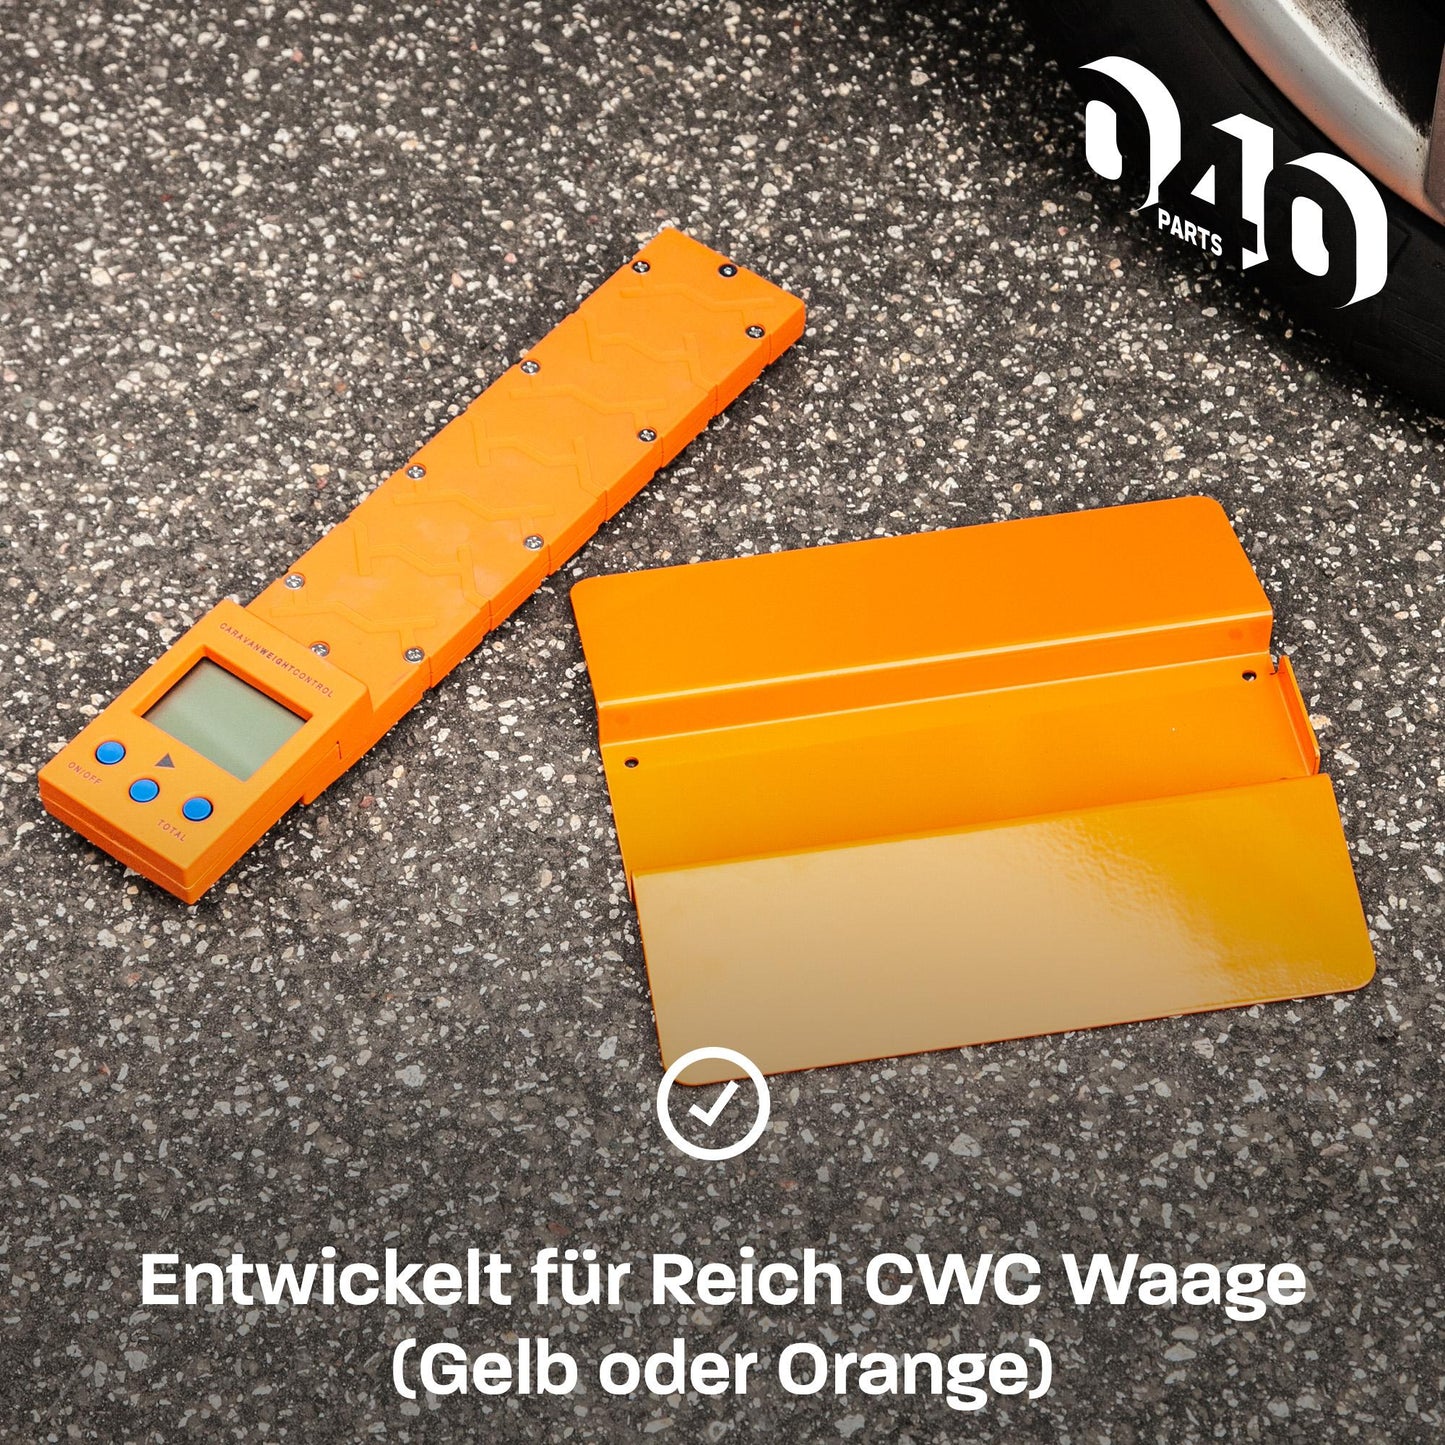 040 Parts Auffahrrampe für Reich CWC Waage für sichere & präzise Messungen egal auf welchem Untergrund